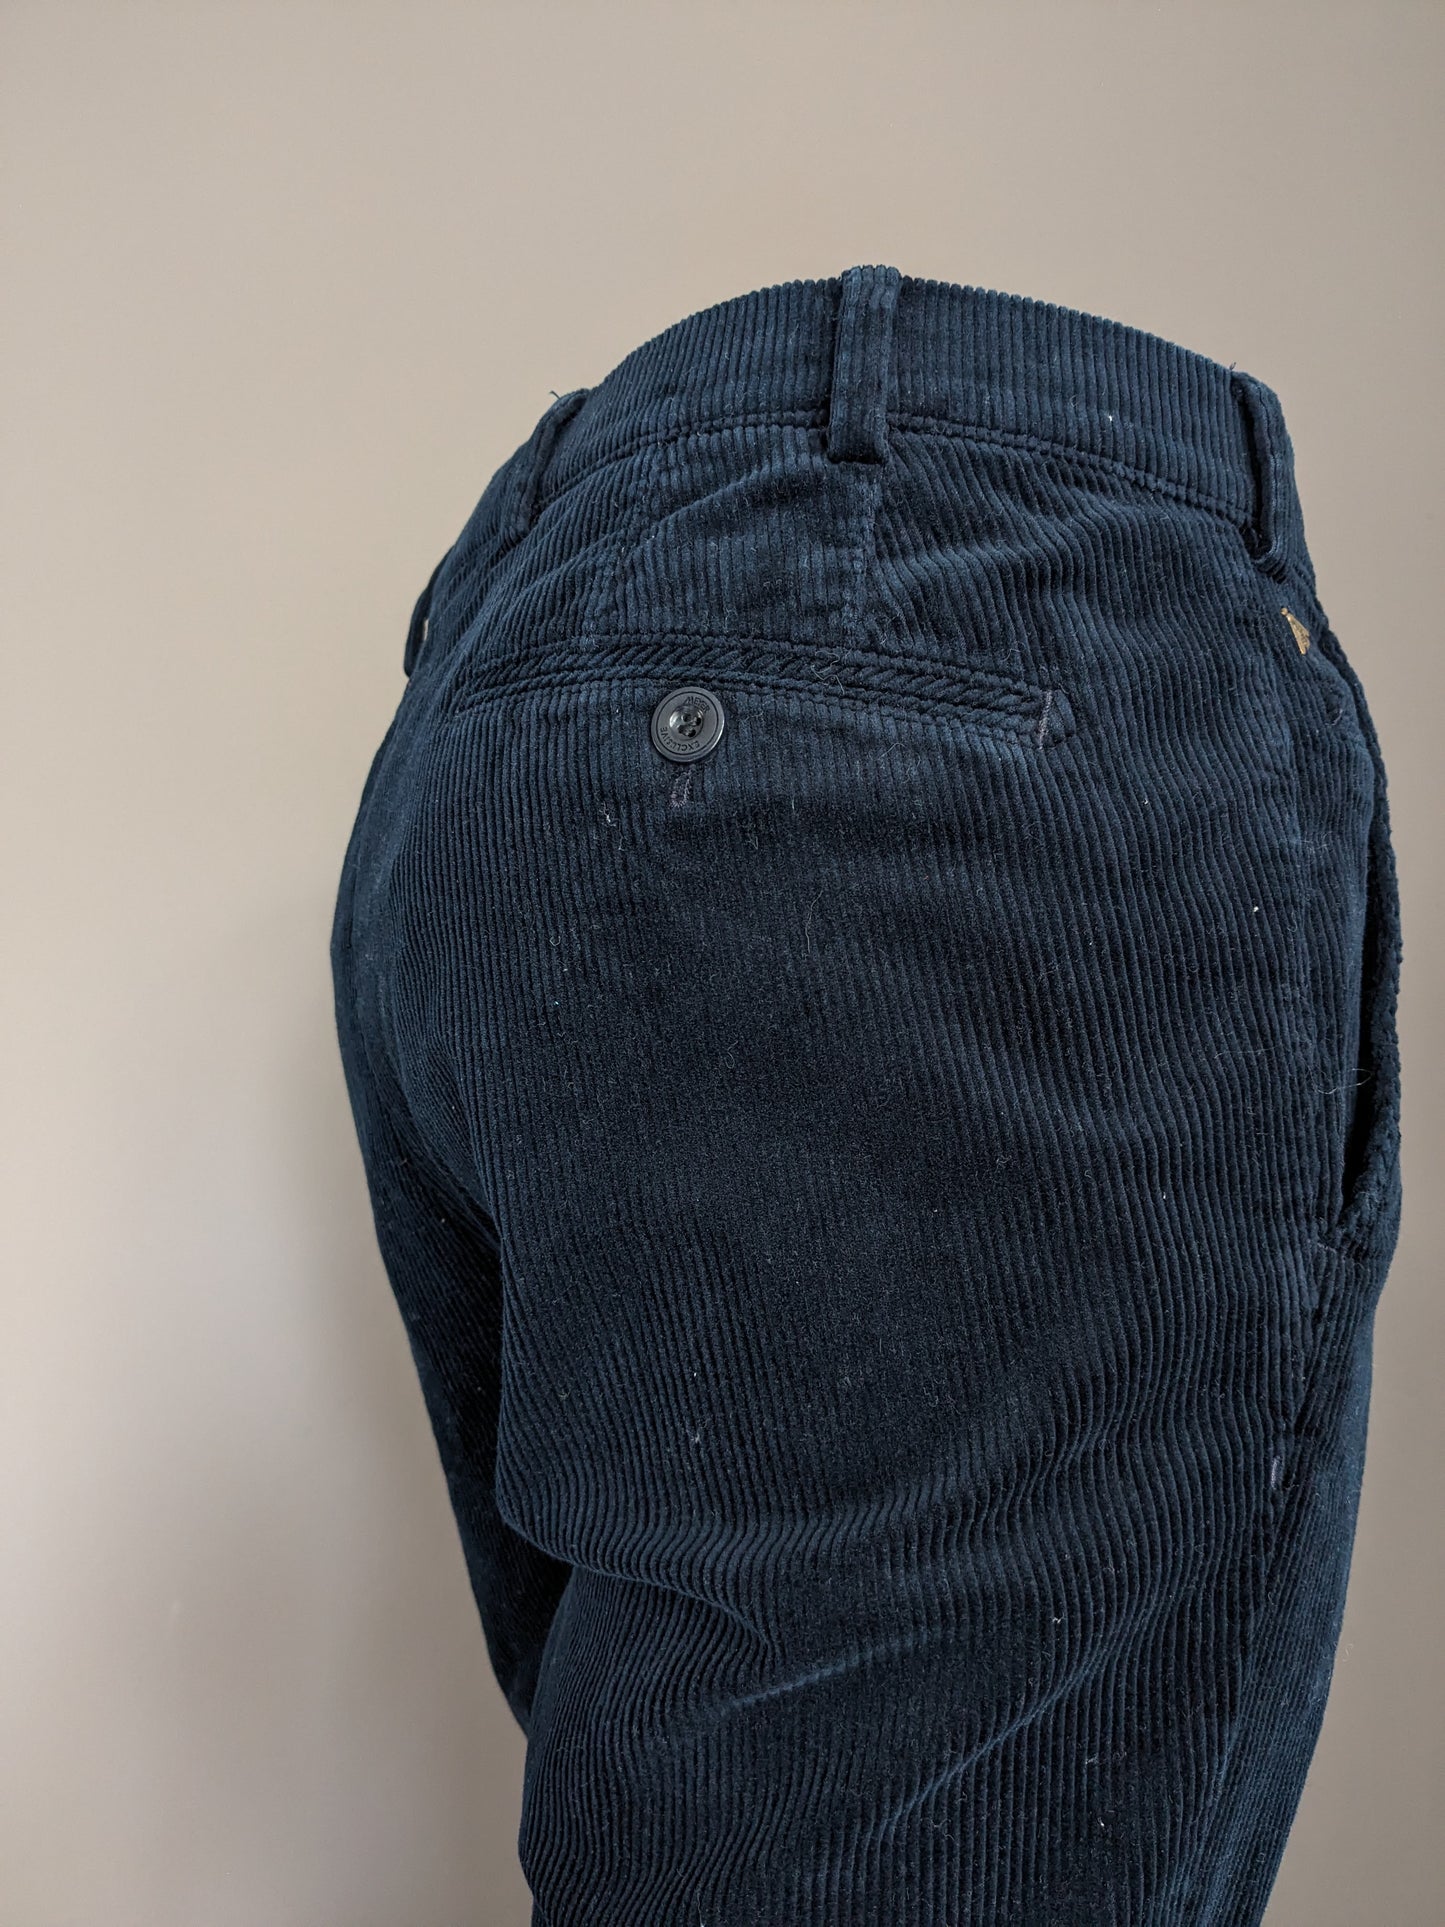 Meyer Pantalones de costilla exclusiva. Color azul oscuro. Tamaño 52 / L.